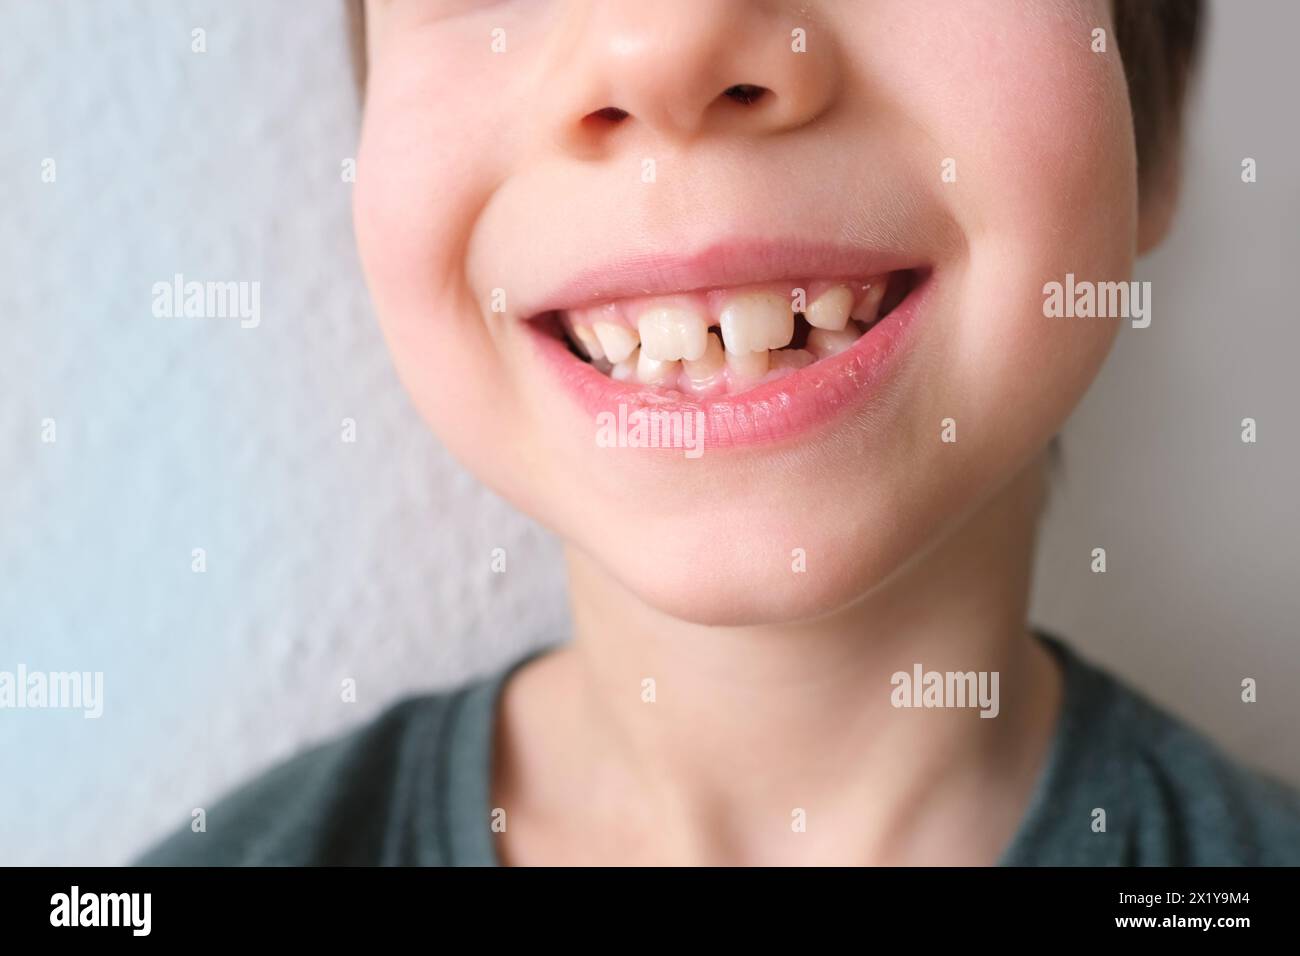 Kleines Kind, Kind 7-8 Jahre alt sitzt mit offenem Mund, Zähne Nahaufnahme, Untersuchung des Backenzahns durch einen Zahnarzt, Konzept der Zahnbehandlung, Bisskontrolle Stockfoto